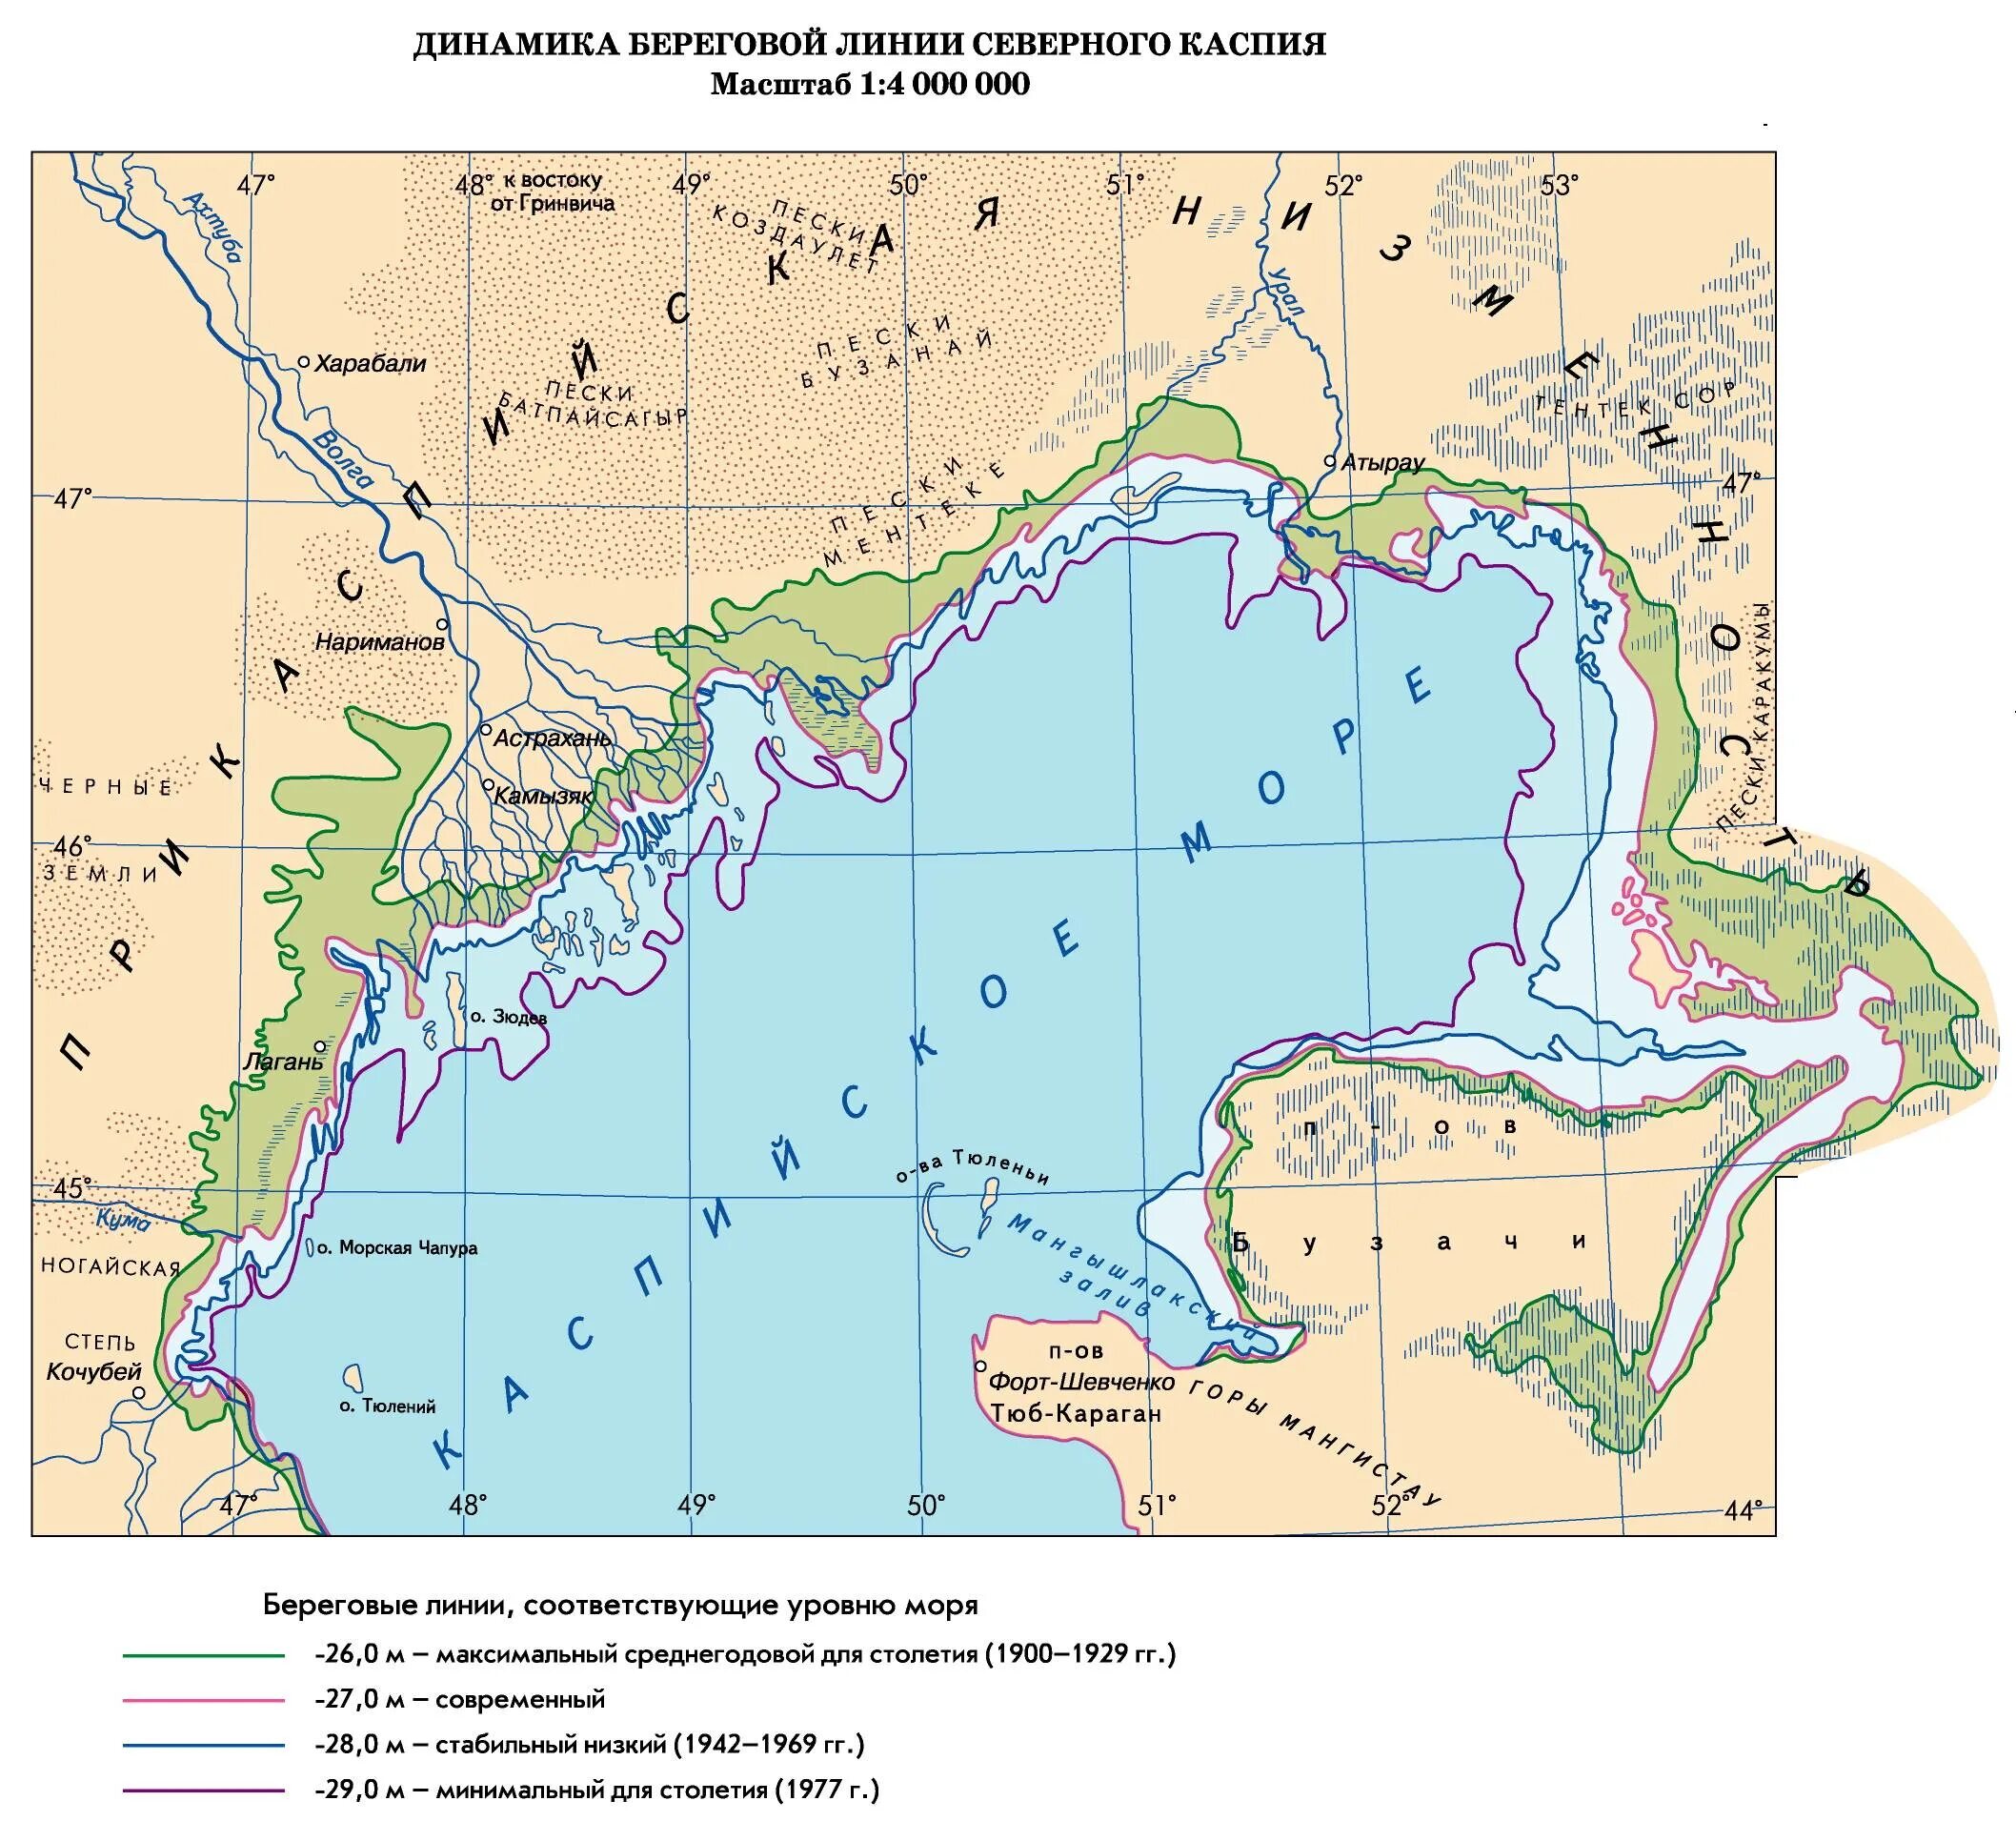 Бассейн каспийского озера. Каспийское море озеро на карте. Реки Каспийского моря на карте. Каспийское море на карте. Каспийское море какие страны омывает карта побережья.